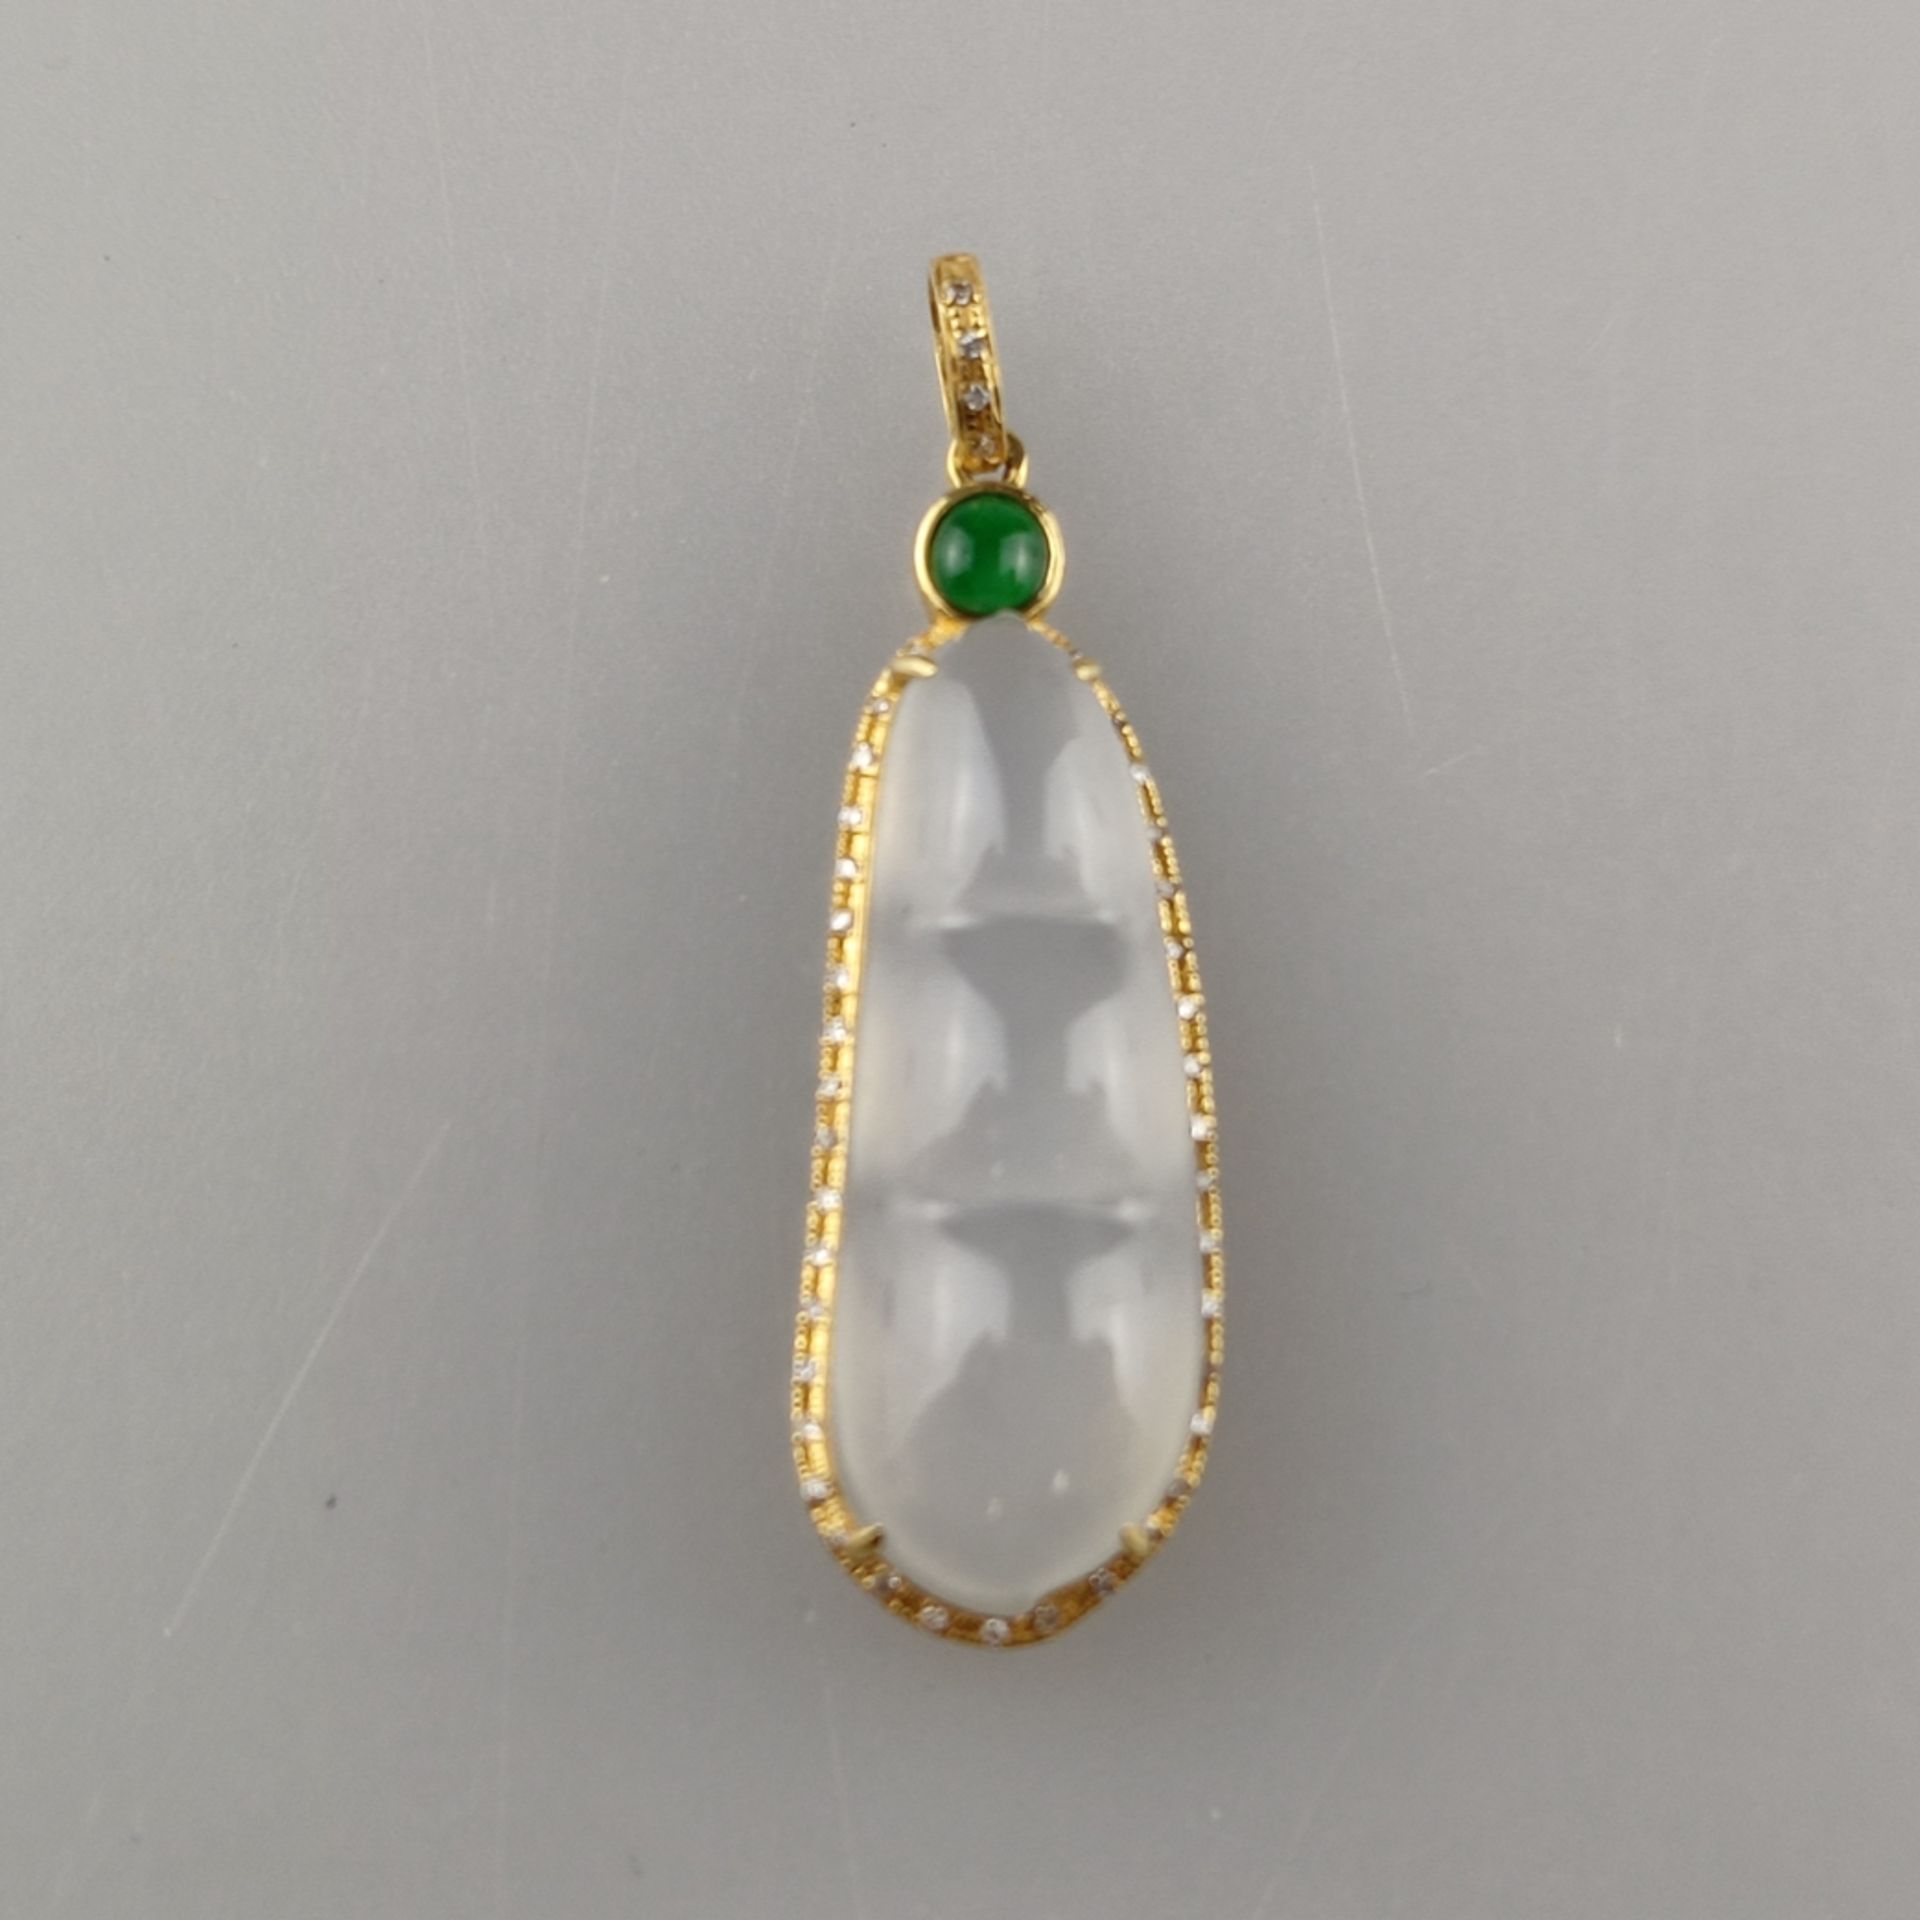 18K-Jade-Anhänger mit Diamanten - Gelbgold 750/000 (18K), milchig weiße Jade, grüner Jadecabochon,  - Bild 2 aus 6